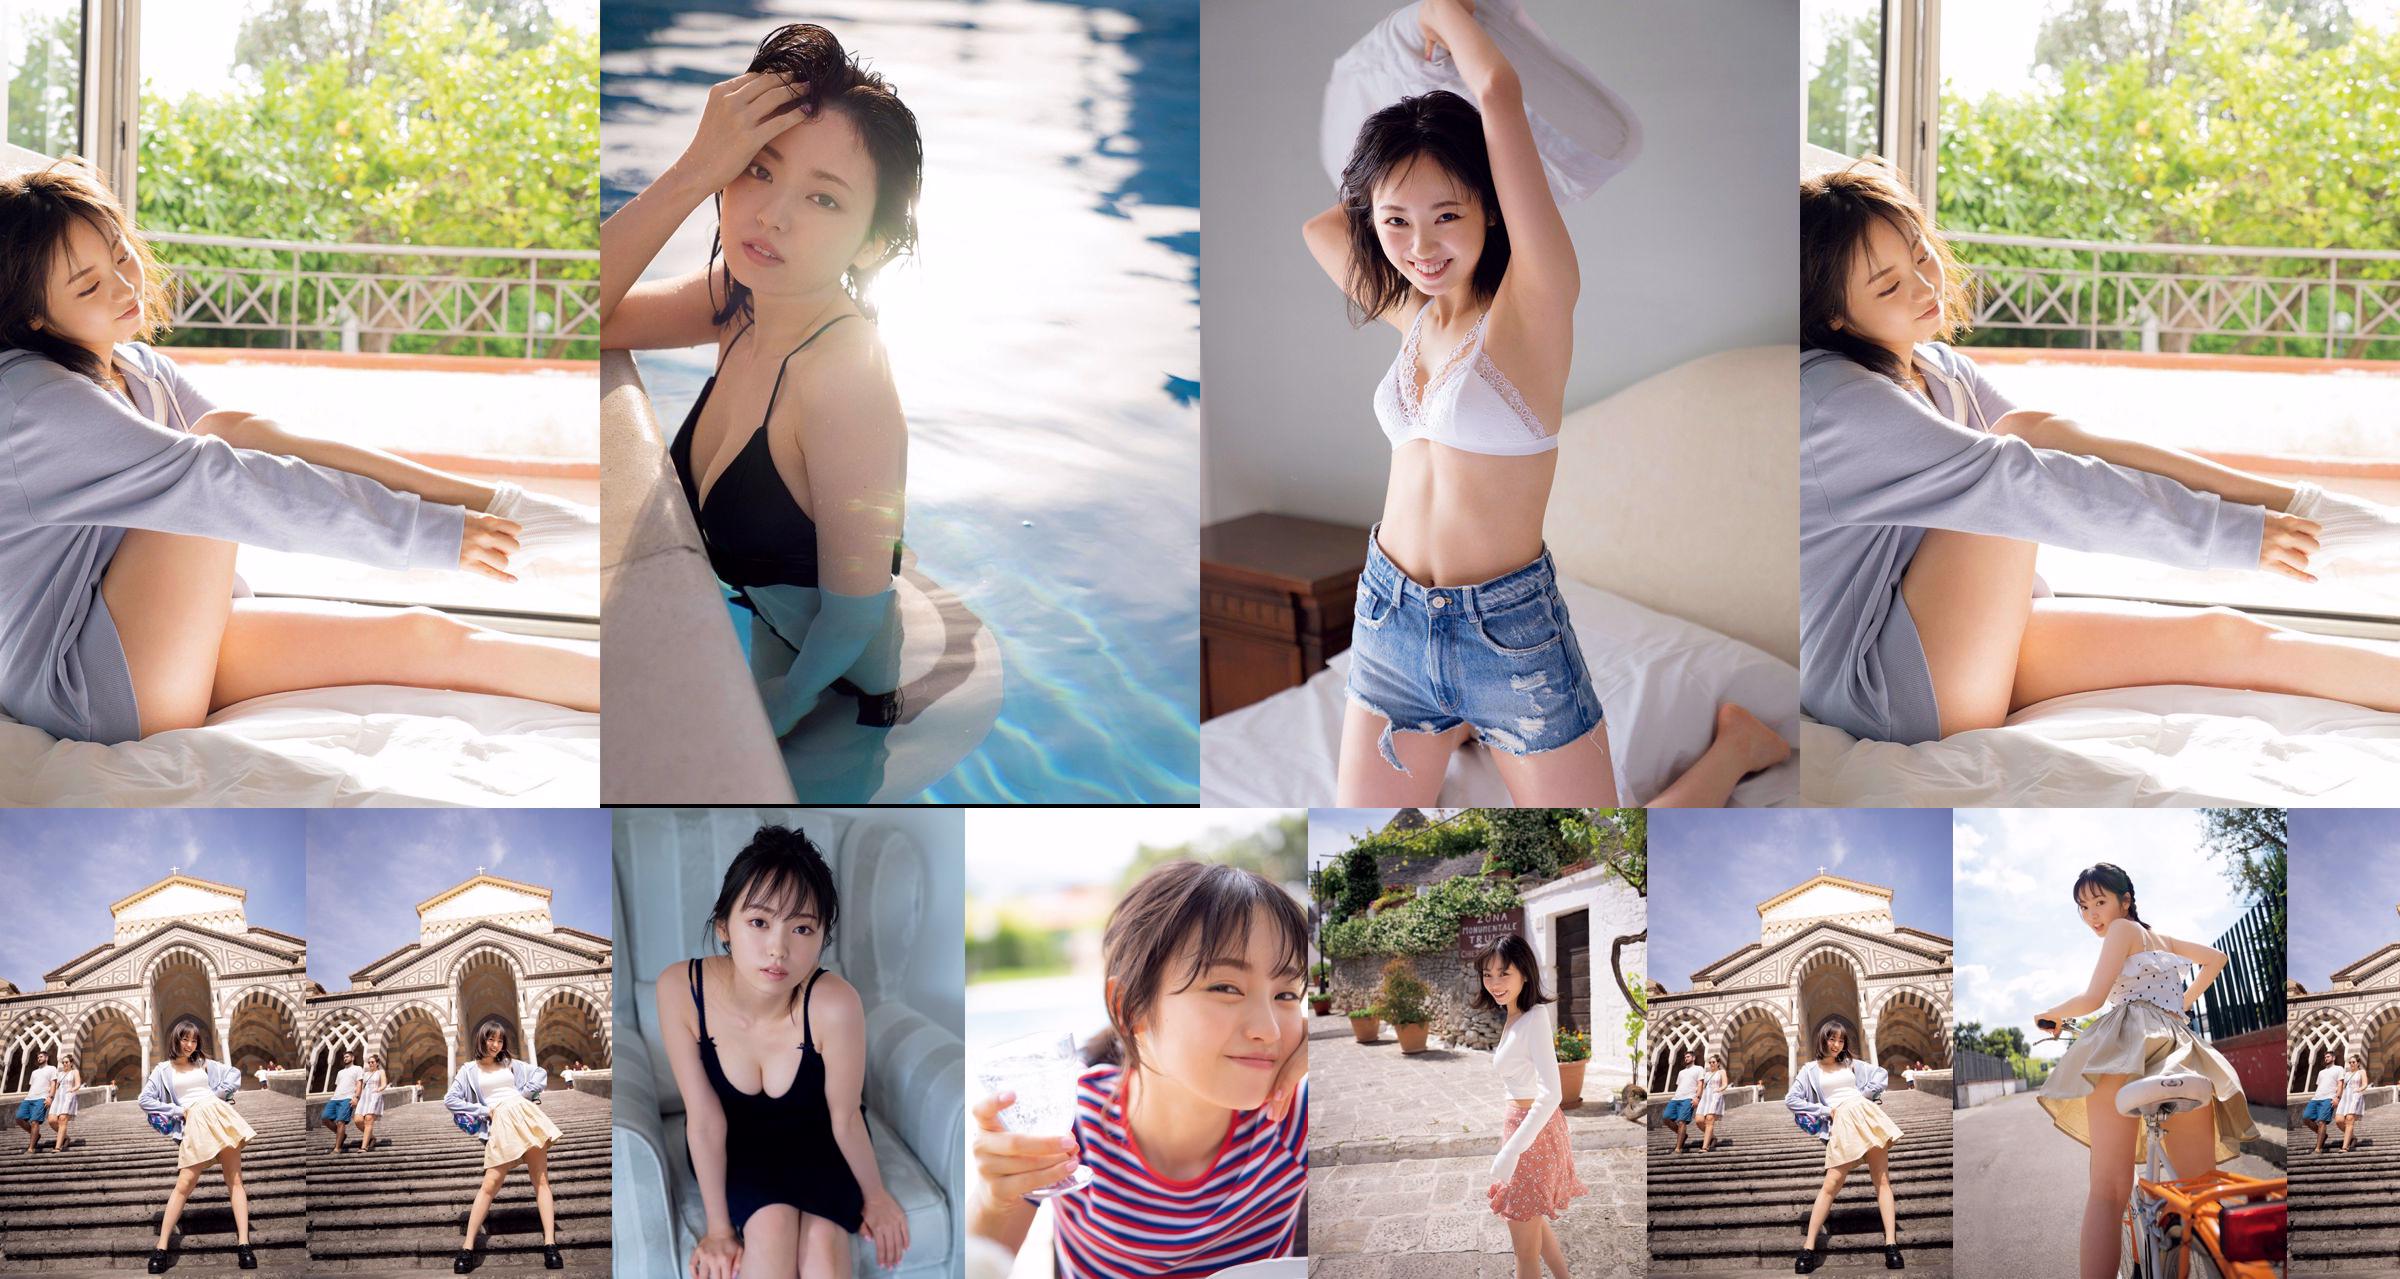 [วันศุกร์] Keyakizaka46, Yui Imaizumi "Swimsuit & Lingerie of" First and Last! "" รูปภาพ No.e4acf8 หน้า 2